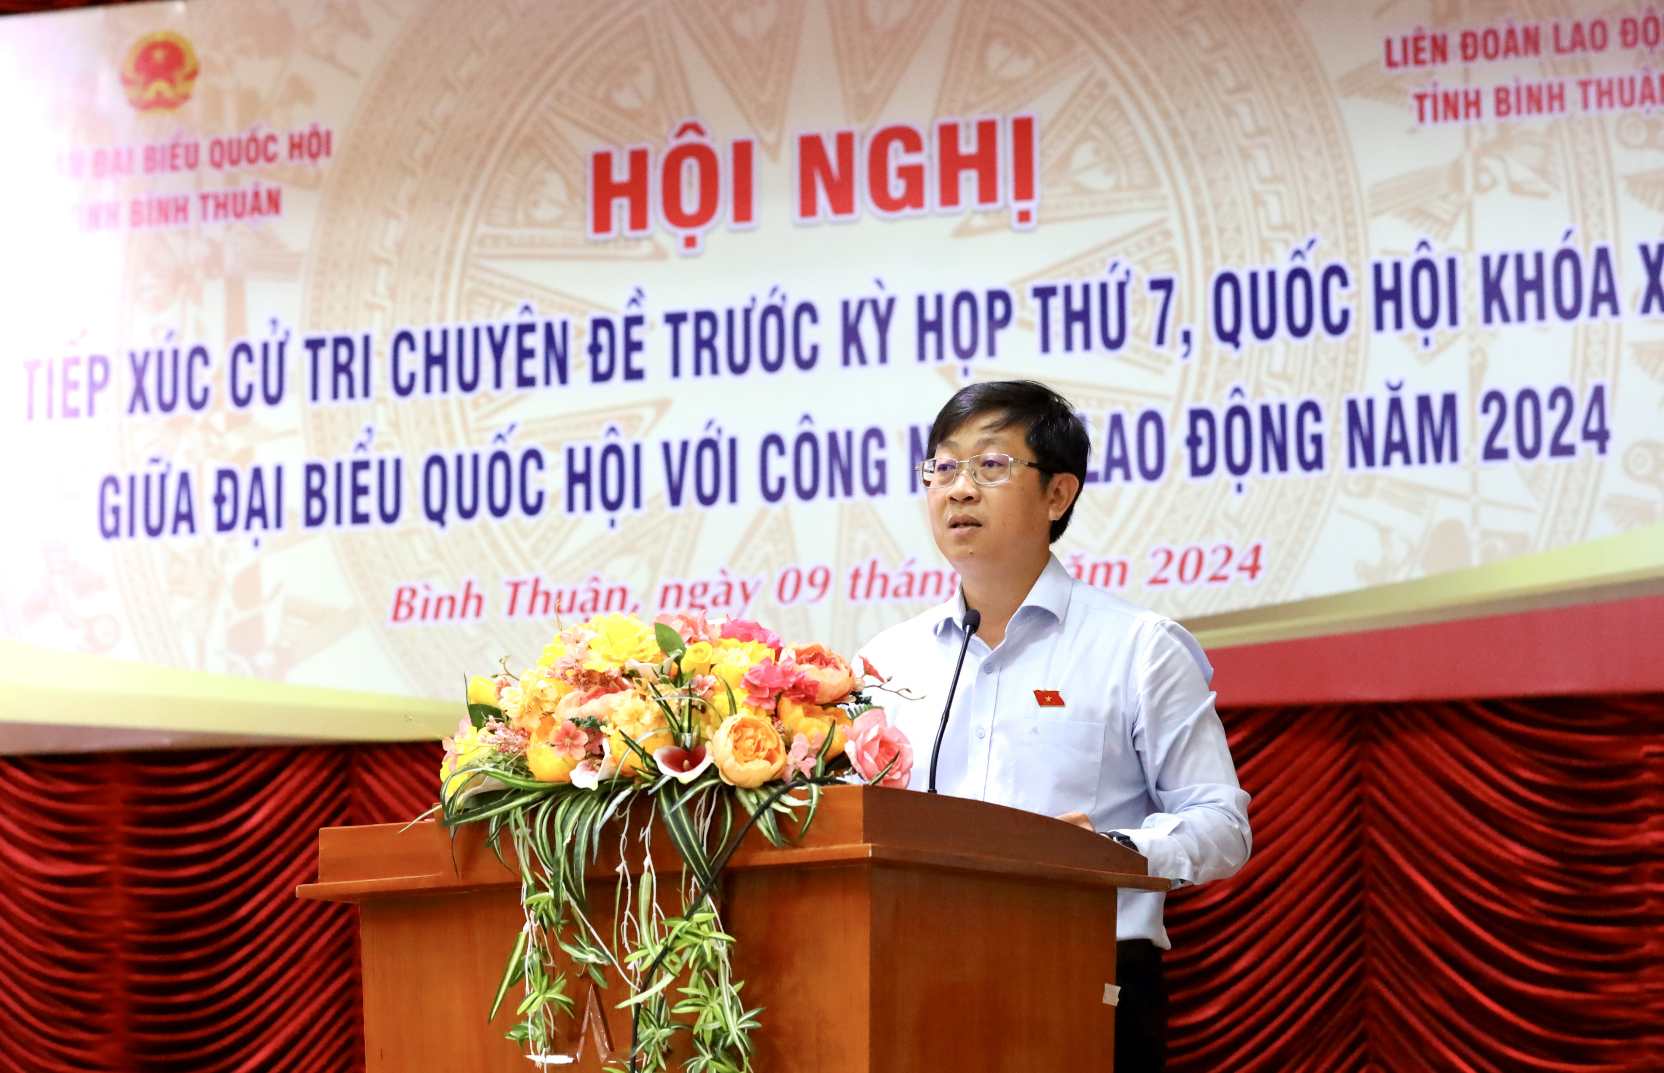  Ông Nguyễn Hữu Thông, Phó Trưởng Đoàn ĐBQH chuyên trách tỉnh Bình Thuận phát biểu. Ảnh: Duy Tuấn 